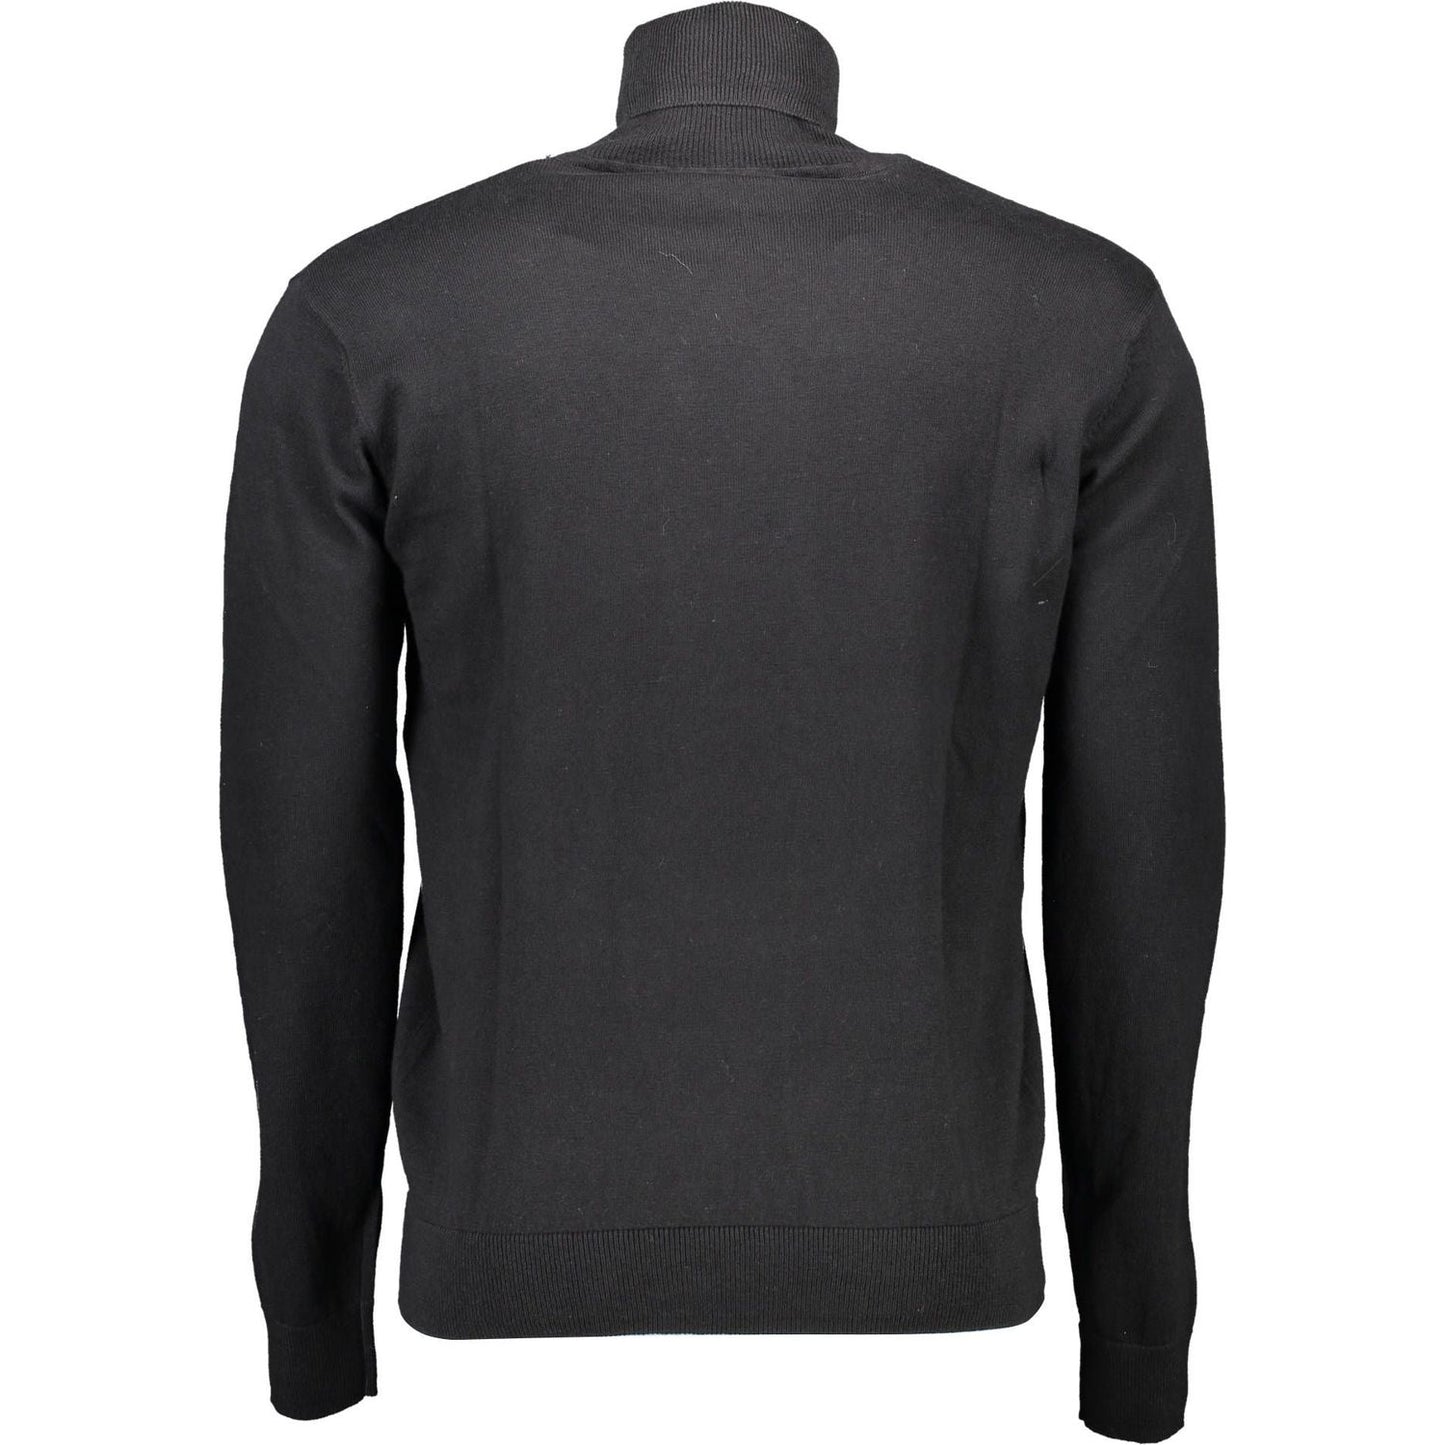 U.S. POLO ASSN. Elegant High Collar Cotton Cashmere Sweater elegant-high-collar-cotton-cashmere-sweater